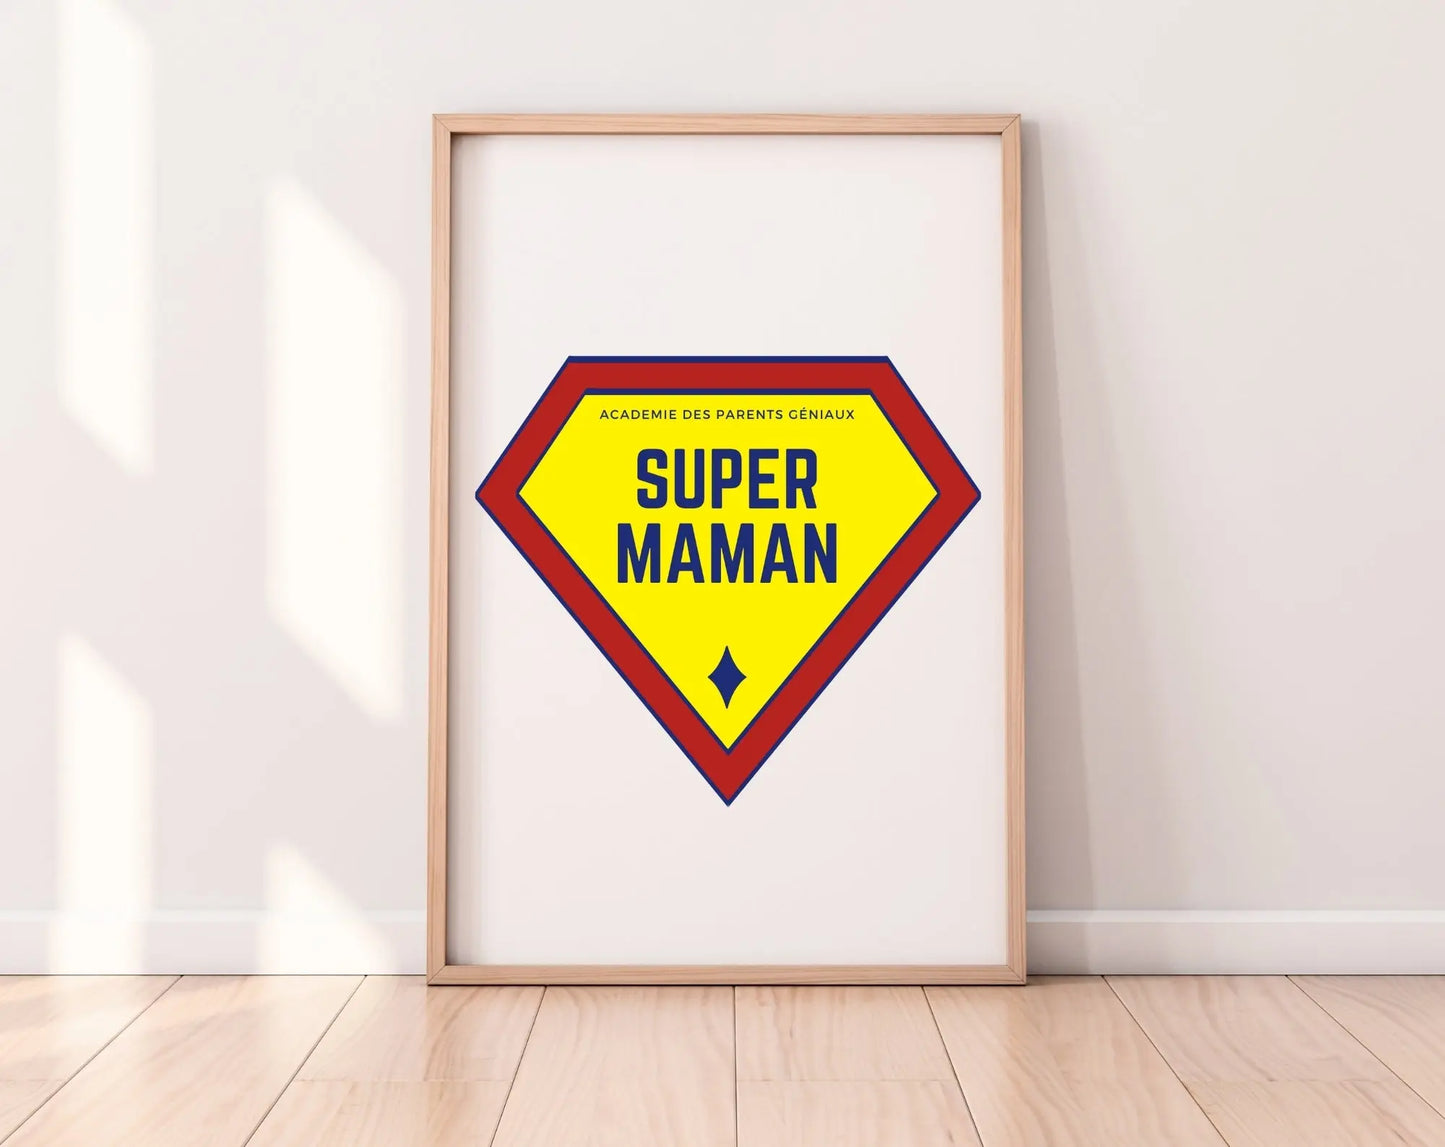 Affiche Super Maman - Cadeau fête des mères FLTMfrance